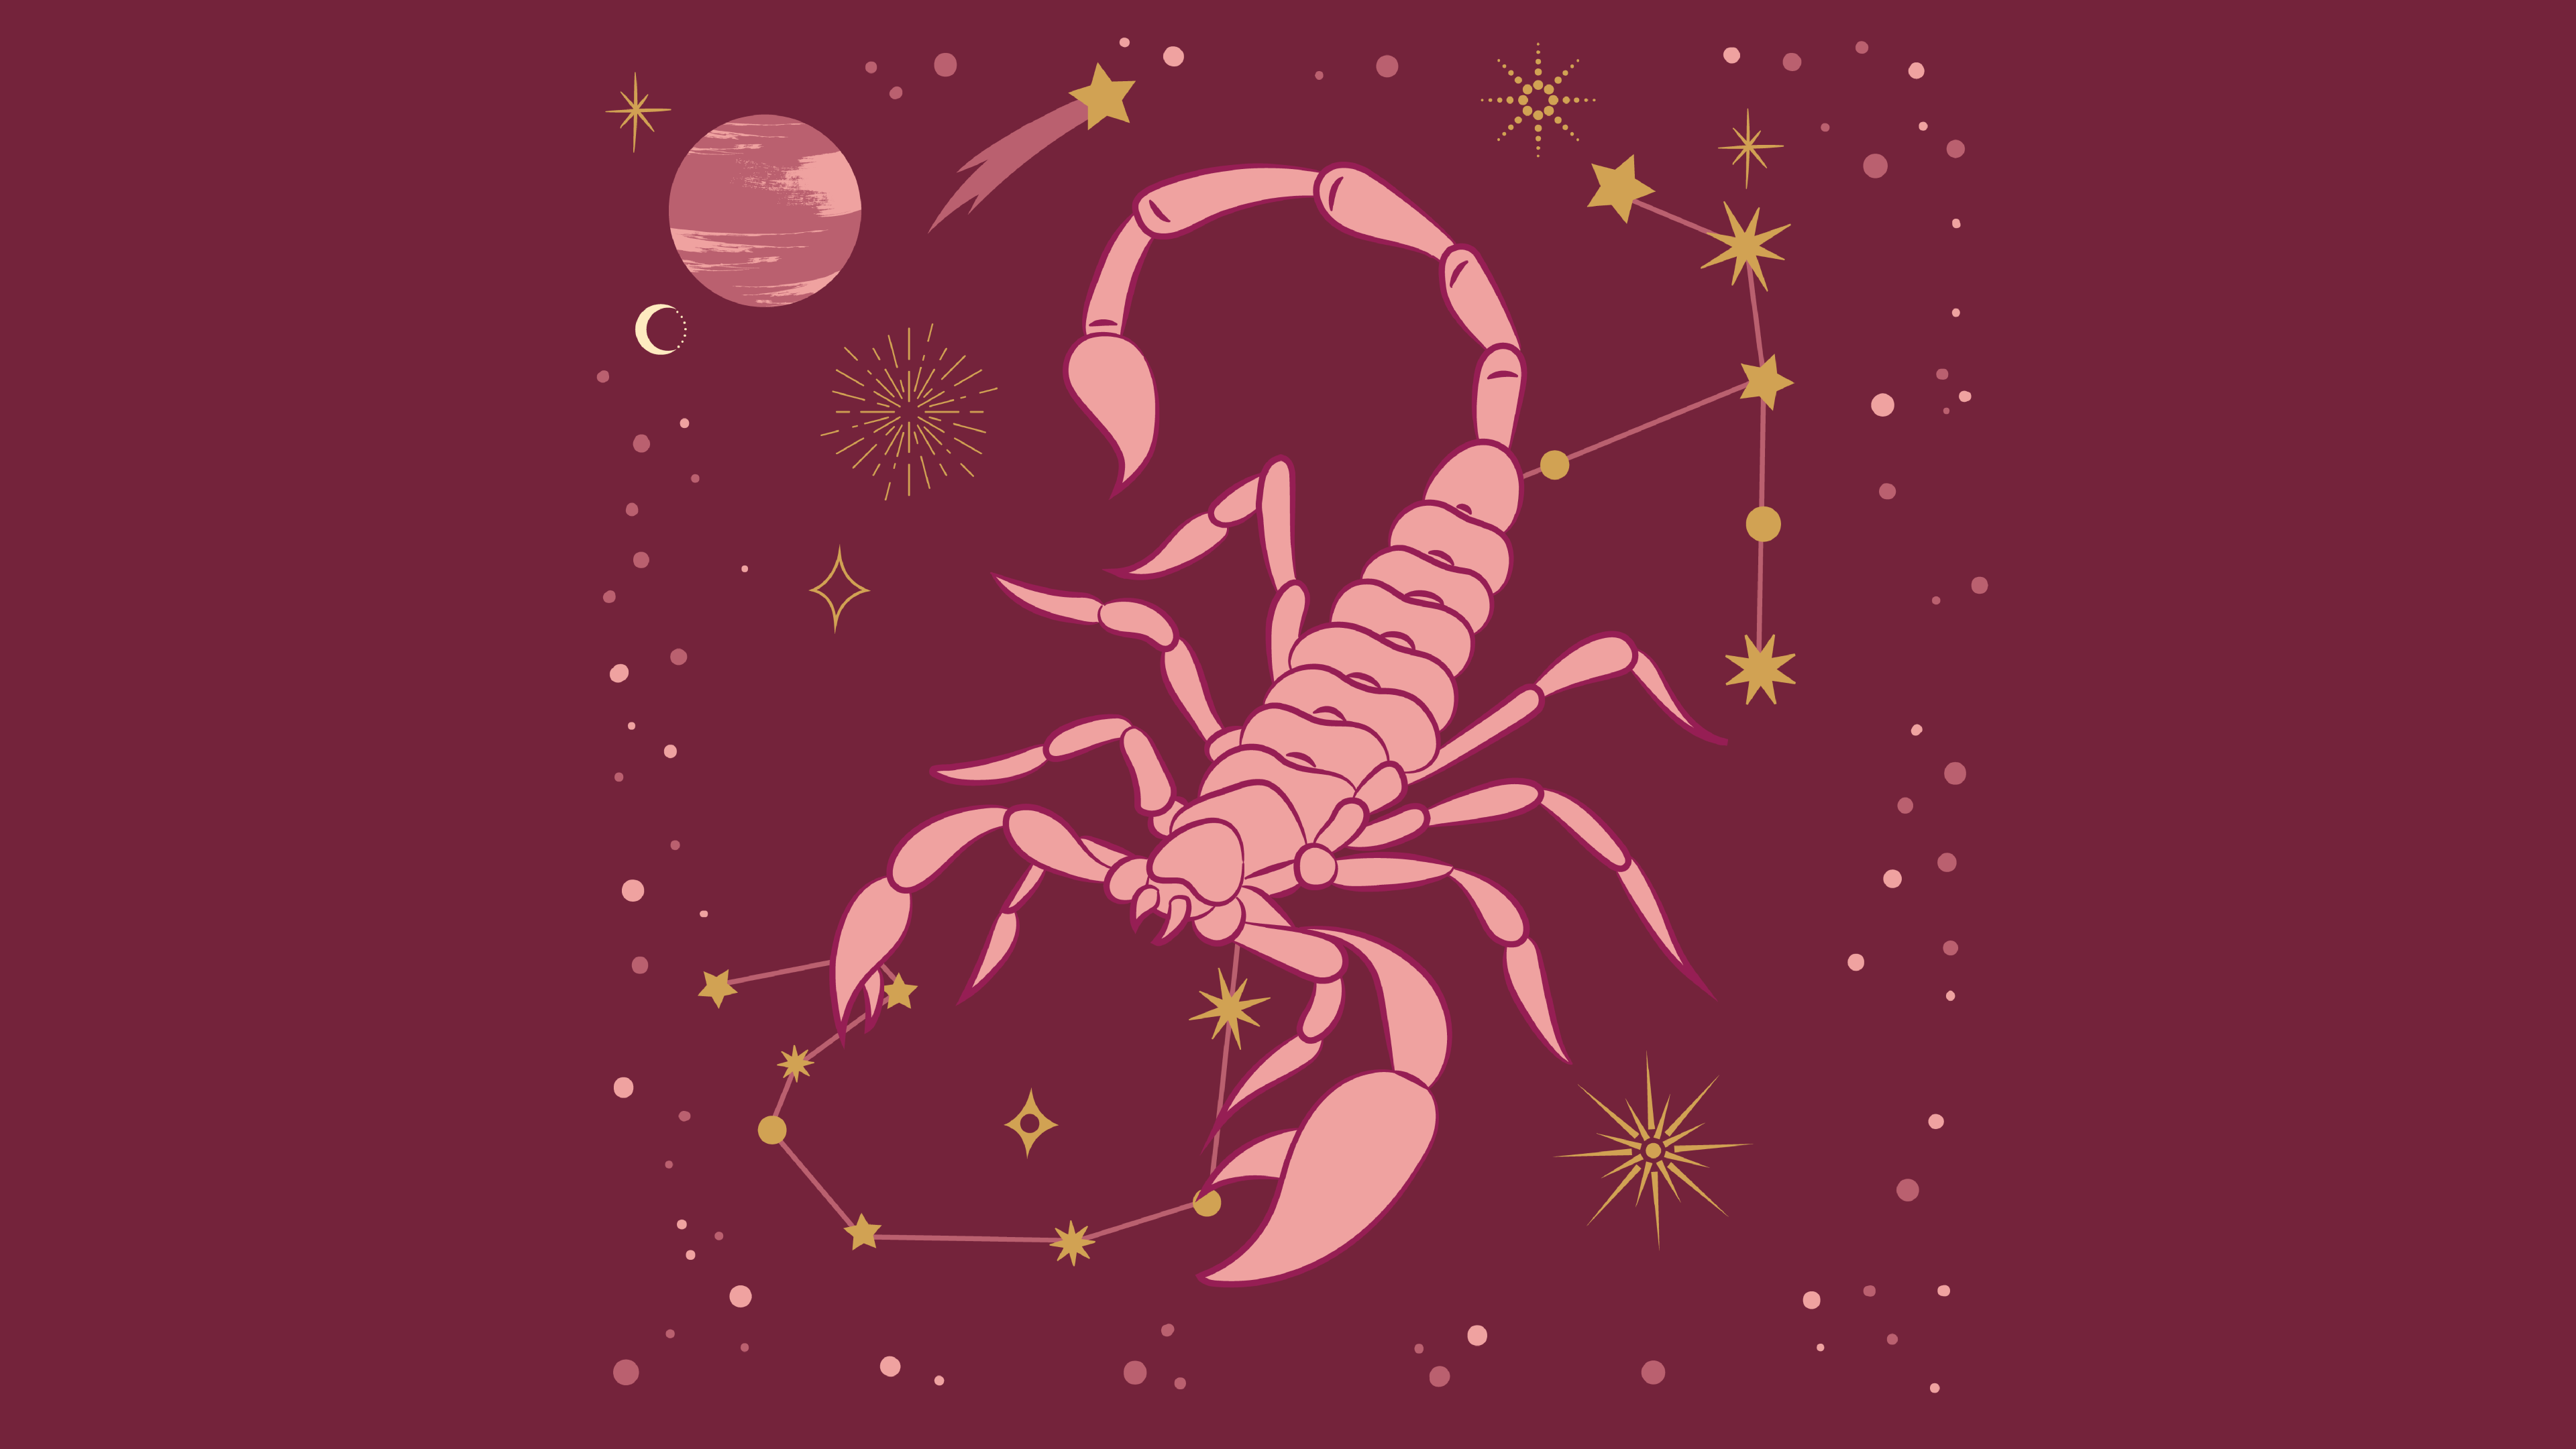 Ramalan Zodiak Scorpio.*/